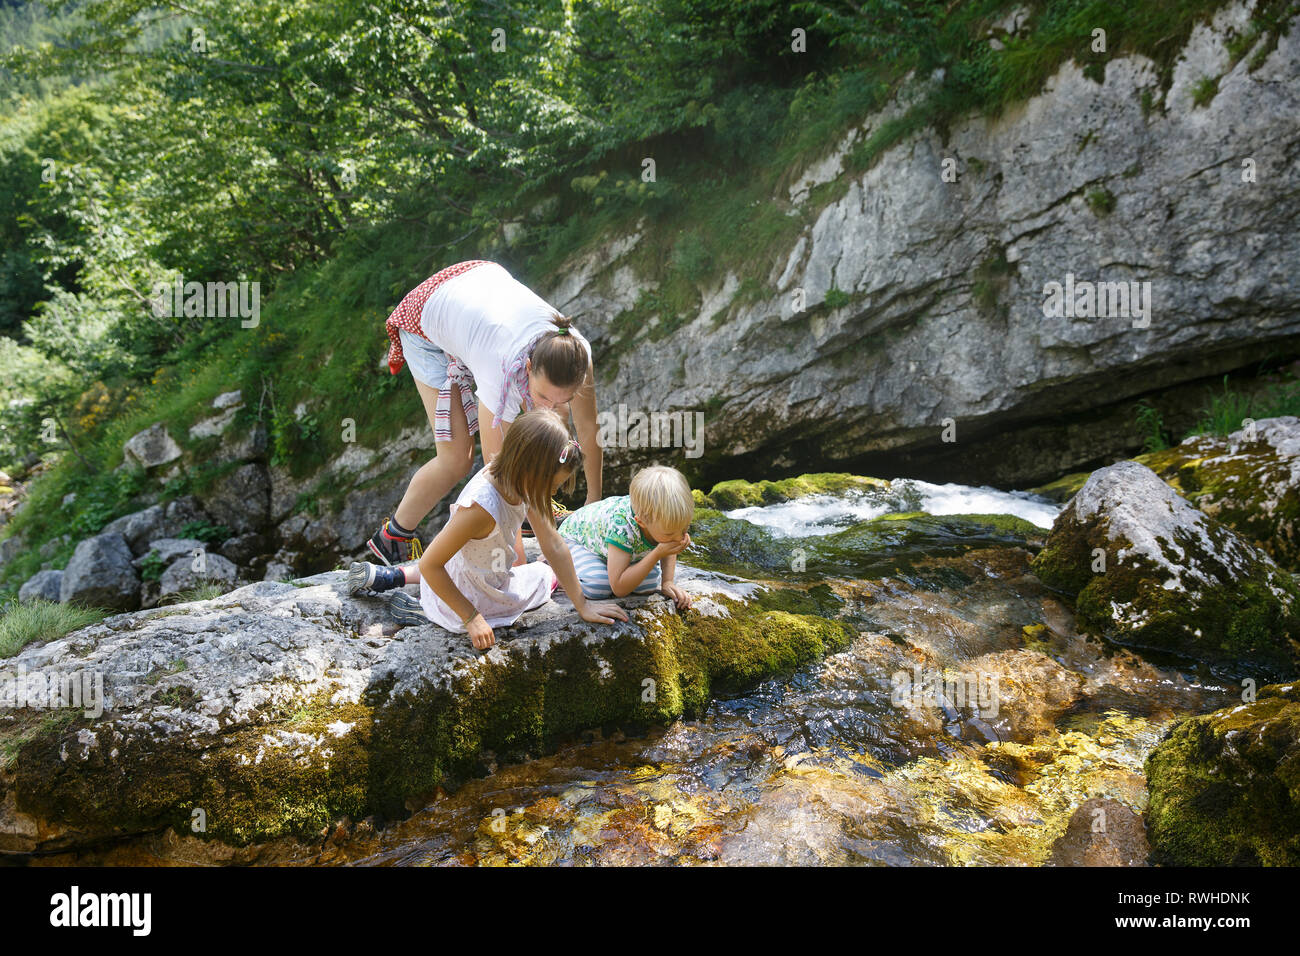 Mutter mit Kindern von Trinkwasser aus einer rein, frisch und kühl Mountain Stream auf einer Reise mit der Familie. Lebensstil im Freien, natürlichen Parenting, Kindheit erleben Stockfoto